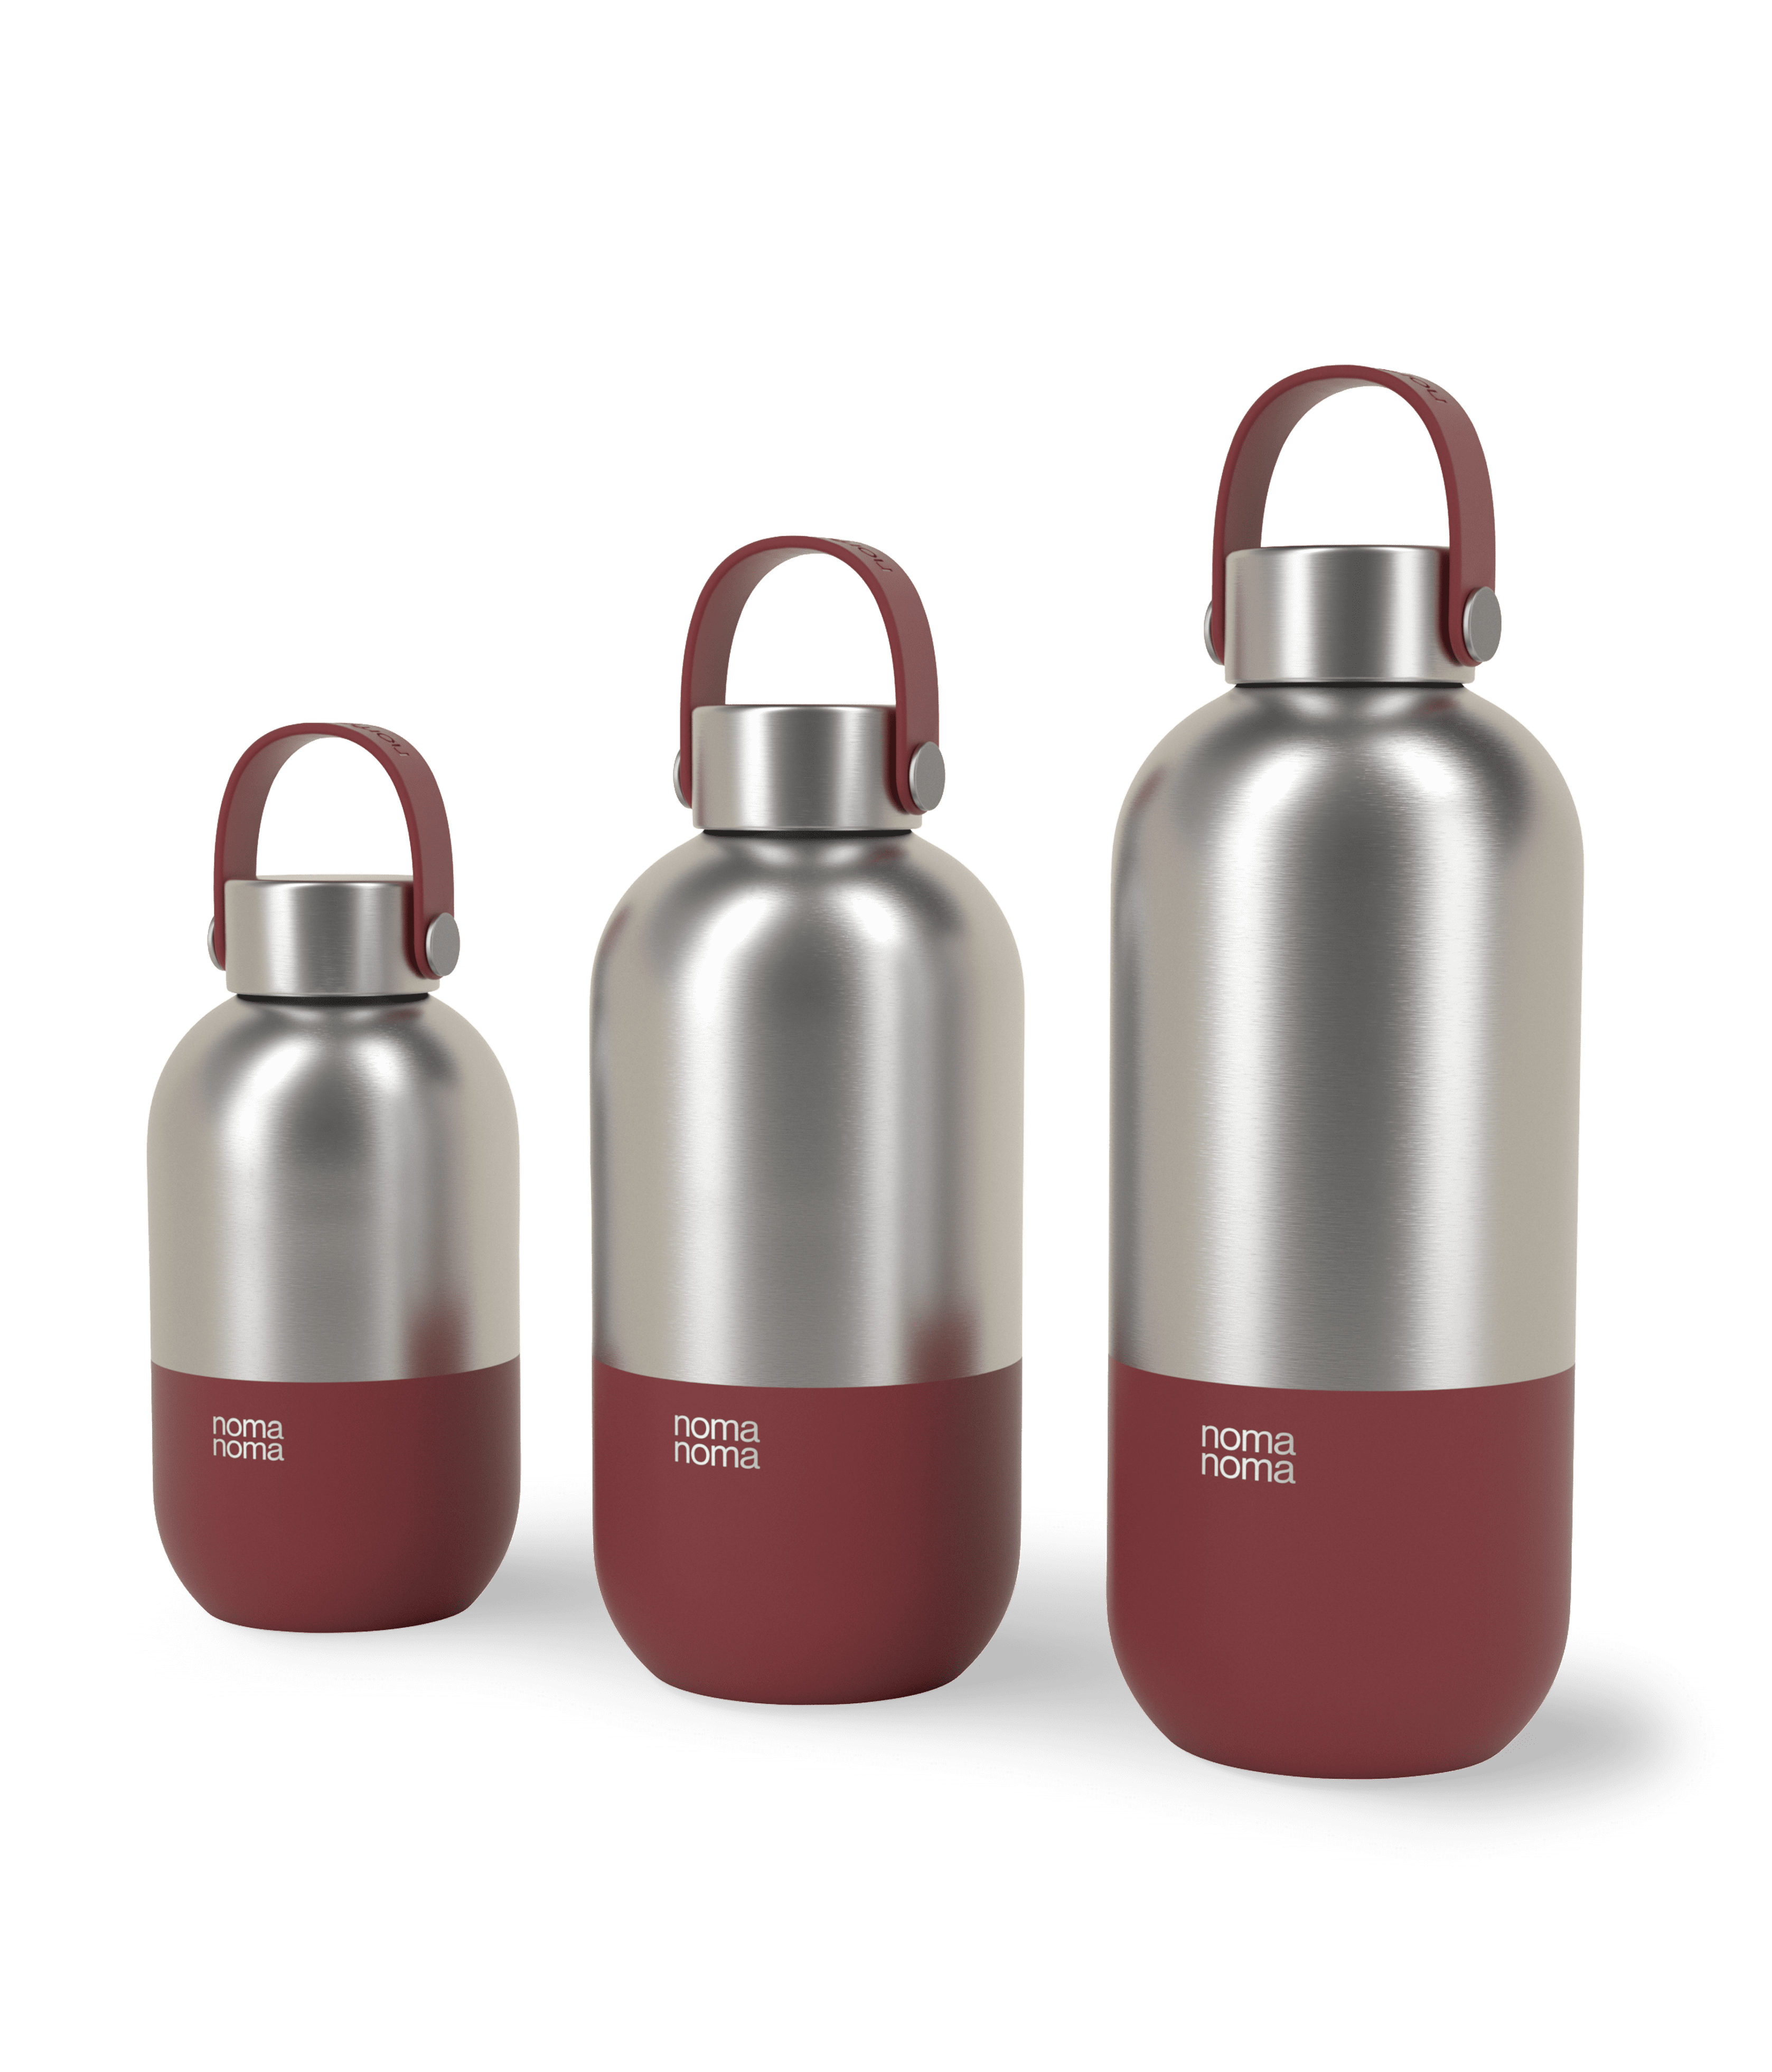 Die grenadine red noma noma Edelstahl Trinkflasche in drei verschiedenen Größen.